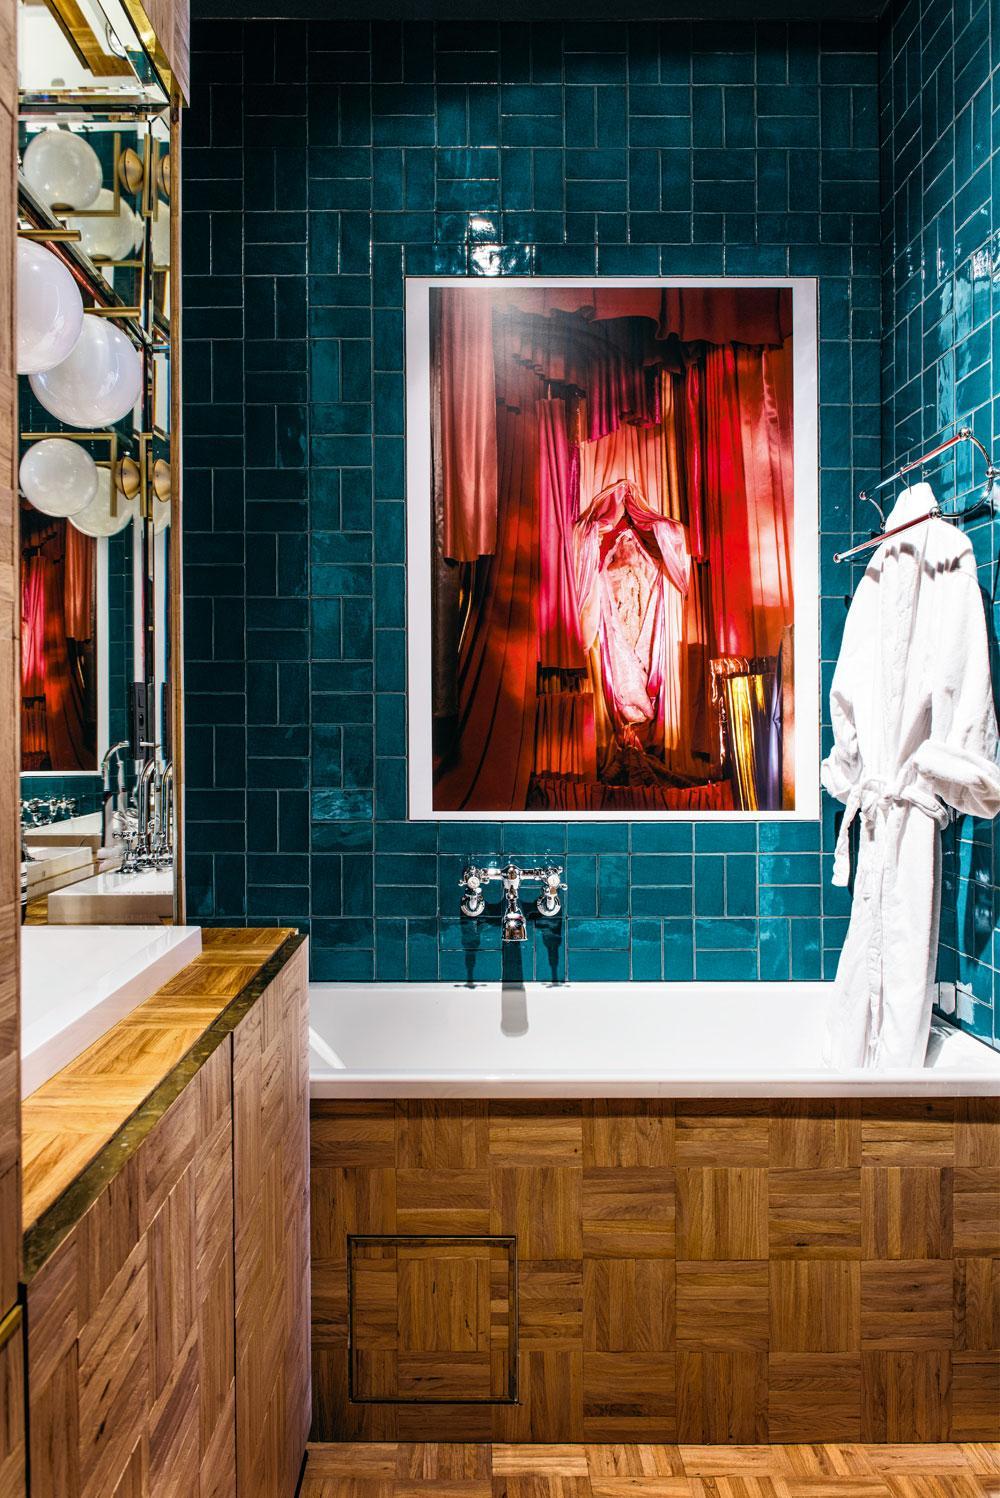 Het werk van fotograaf Athos Burez boven het bad benadrukt de sexy sfeer die in de badkamer moest heersen. De parkettegels op de vloer en de wanden van de badkamer werden online gevonden.